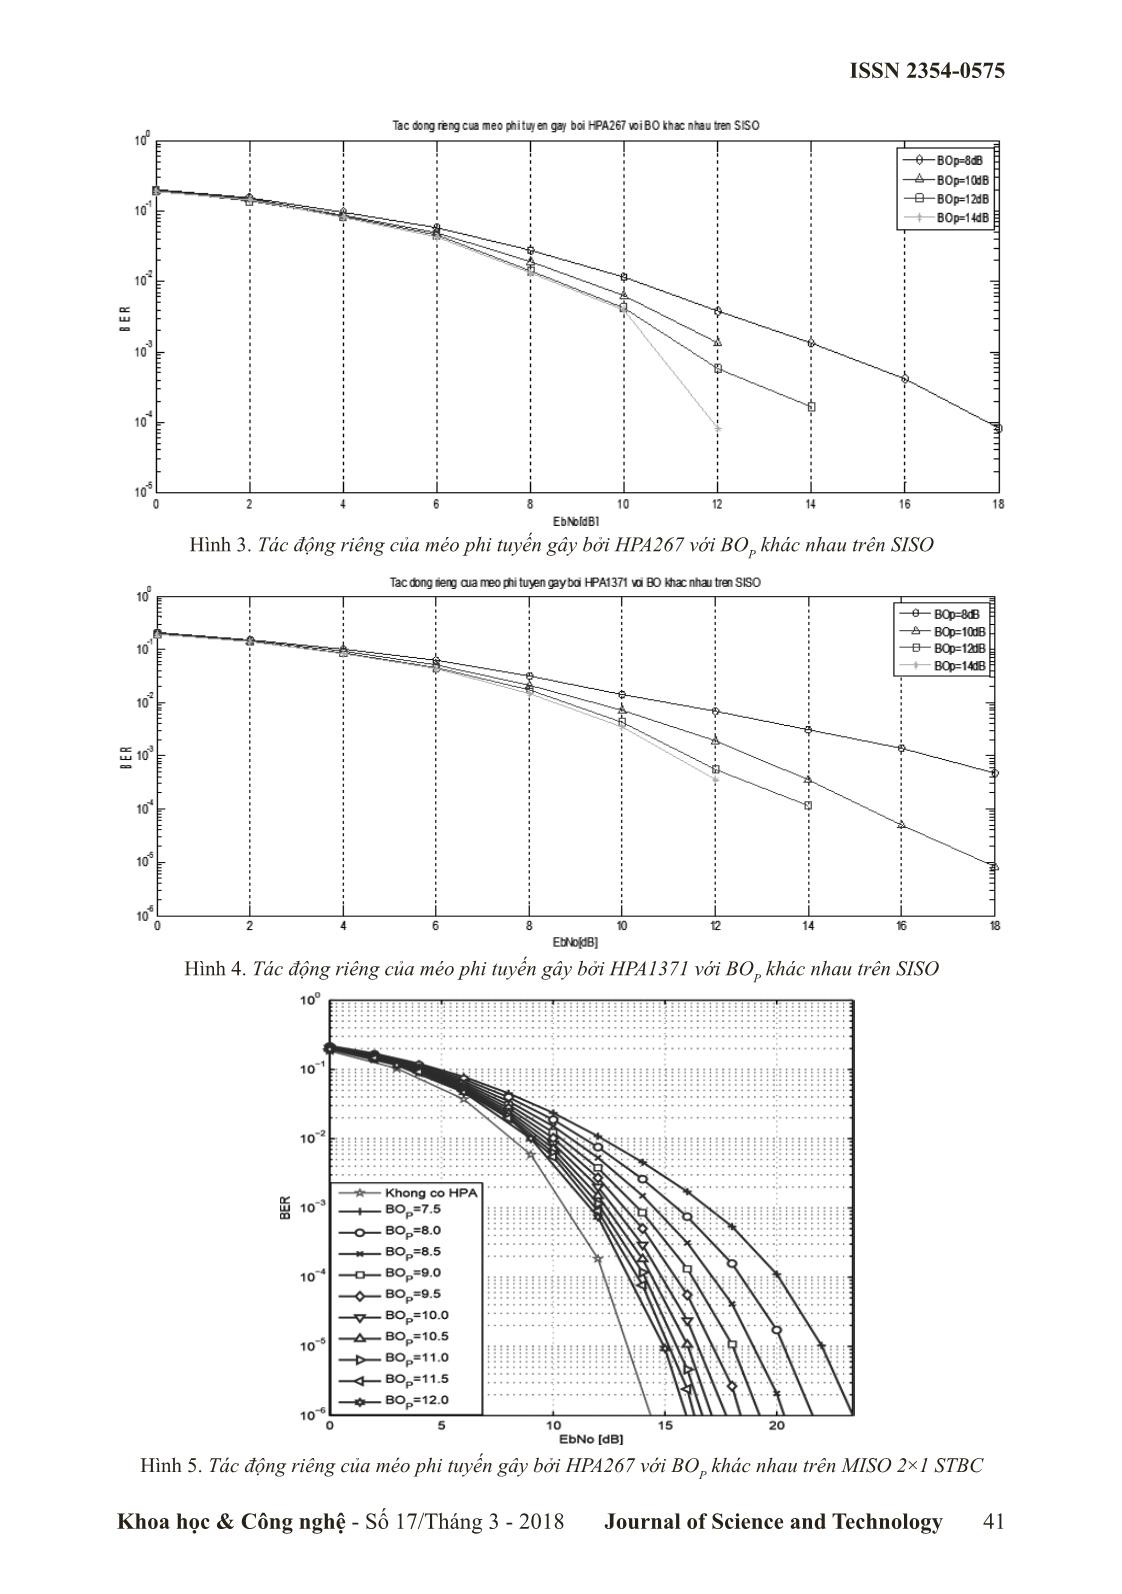 Đánh giá tác động riêng của méo phi tuyến gây bởi hpa trong hệ thống MISO 2×1 STBC trang 4